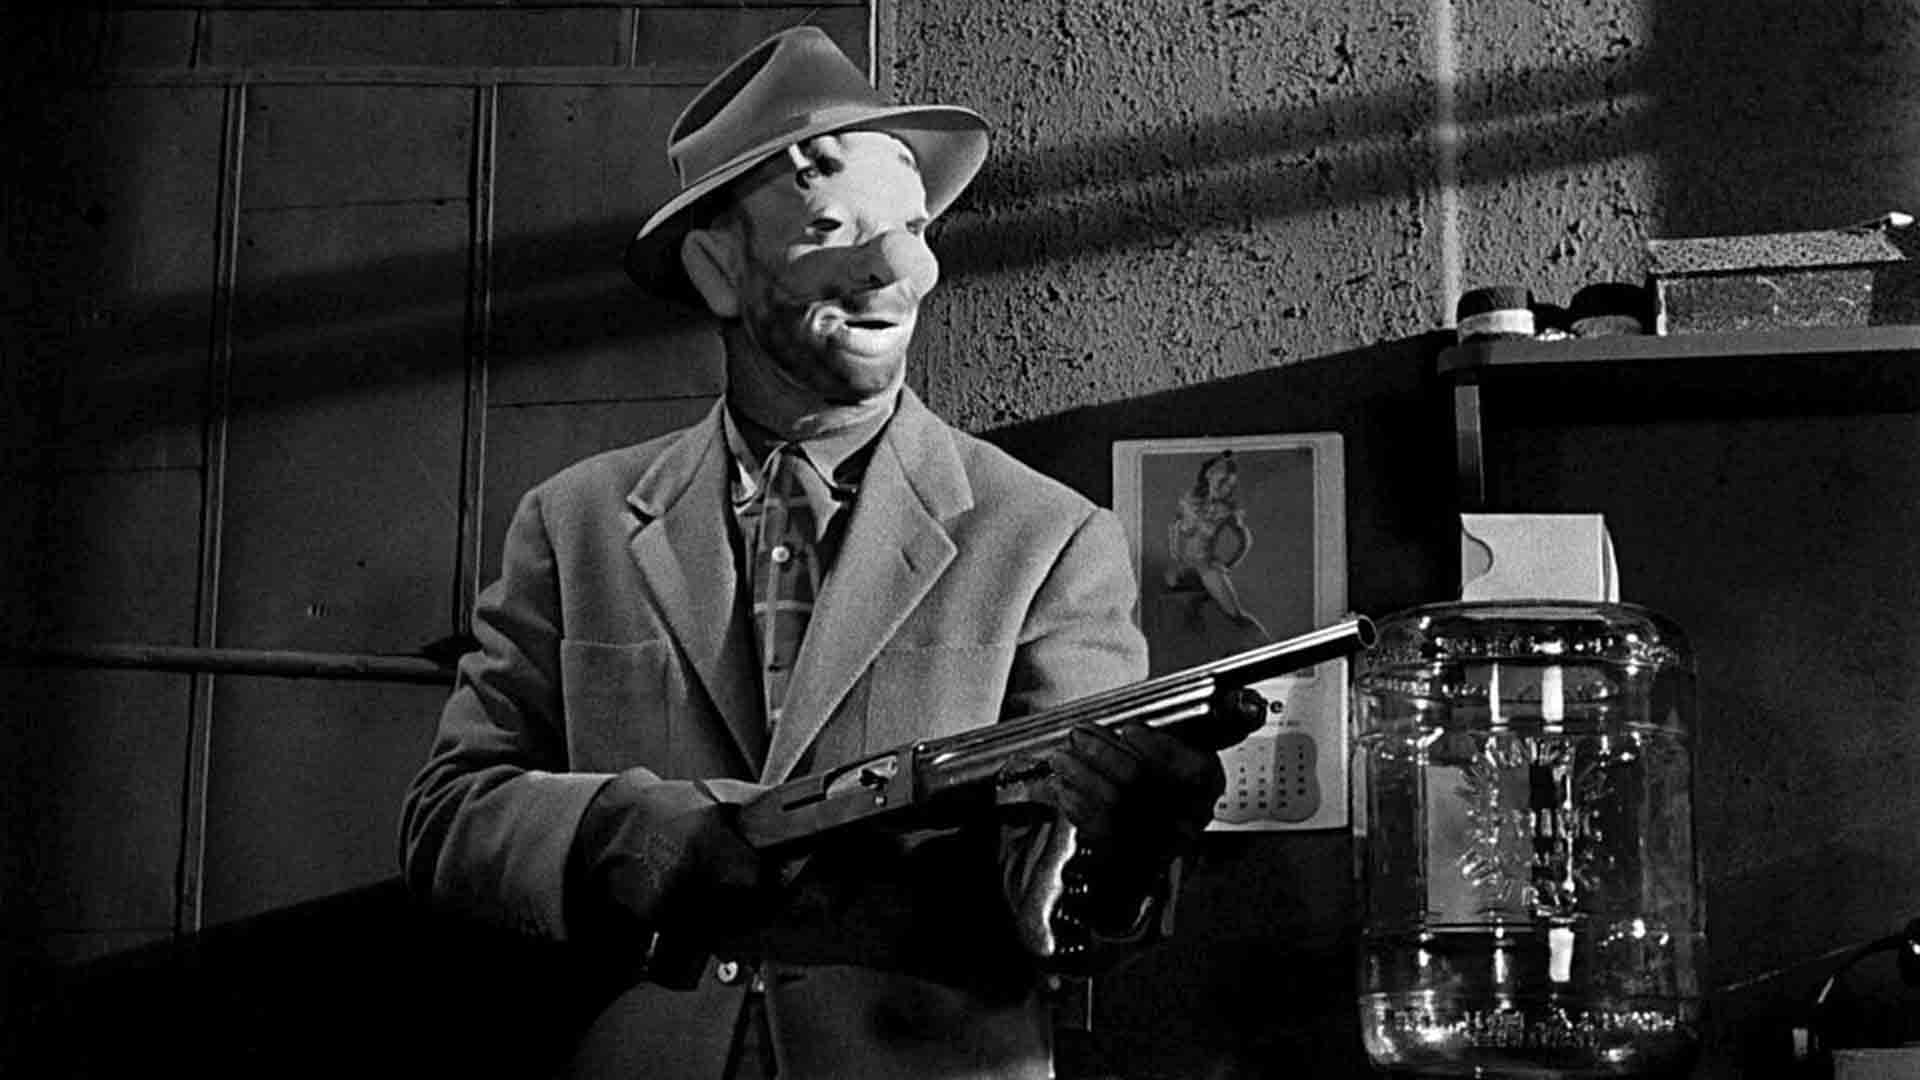 مردی با نقابی زشت، در فیلم The Killing اسلحه در دست دارد